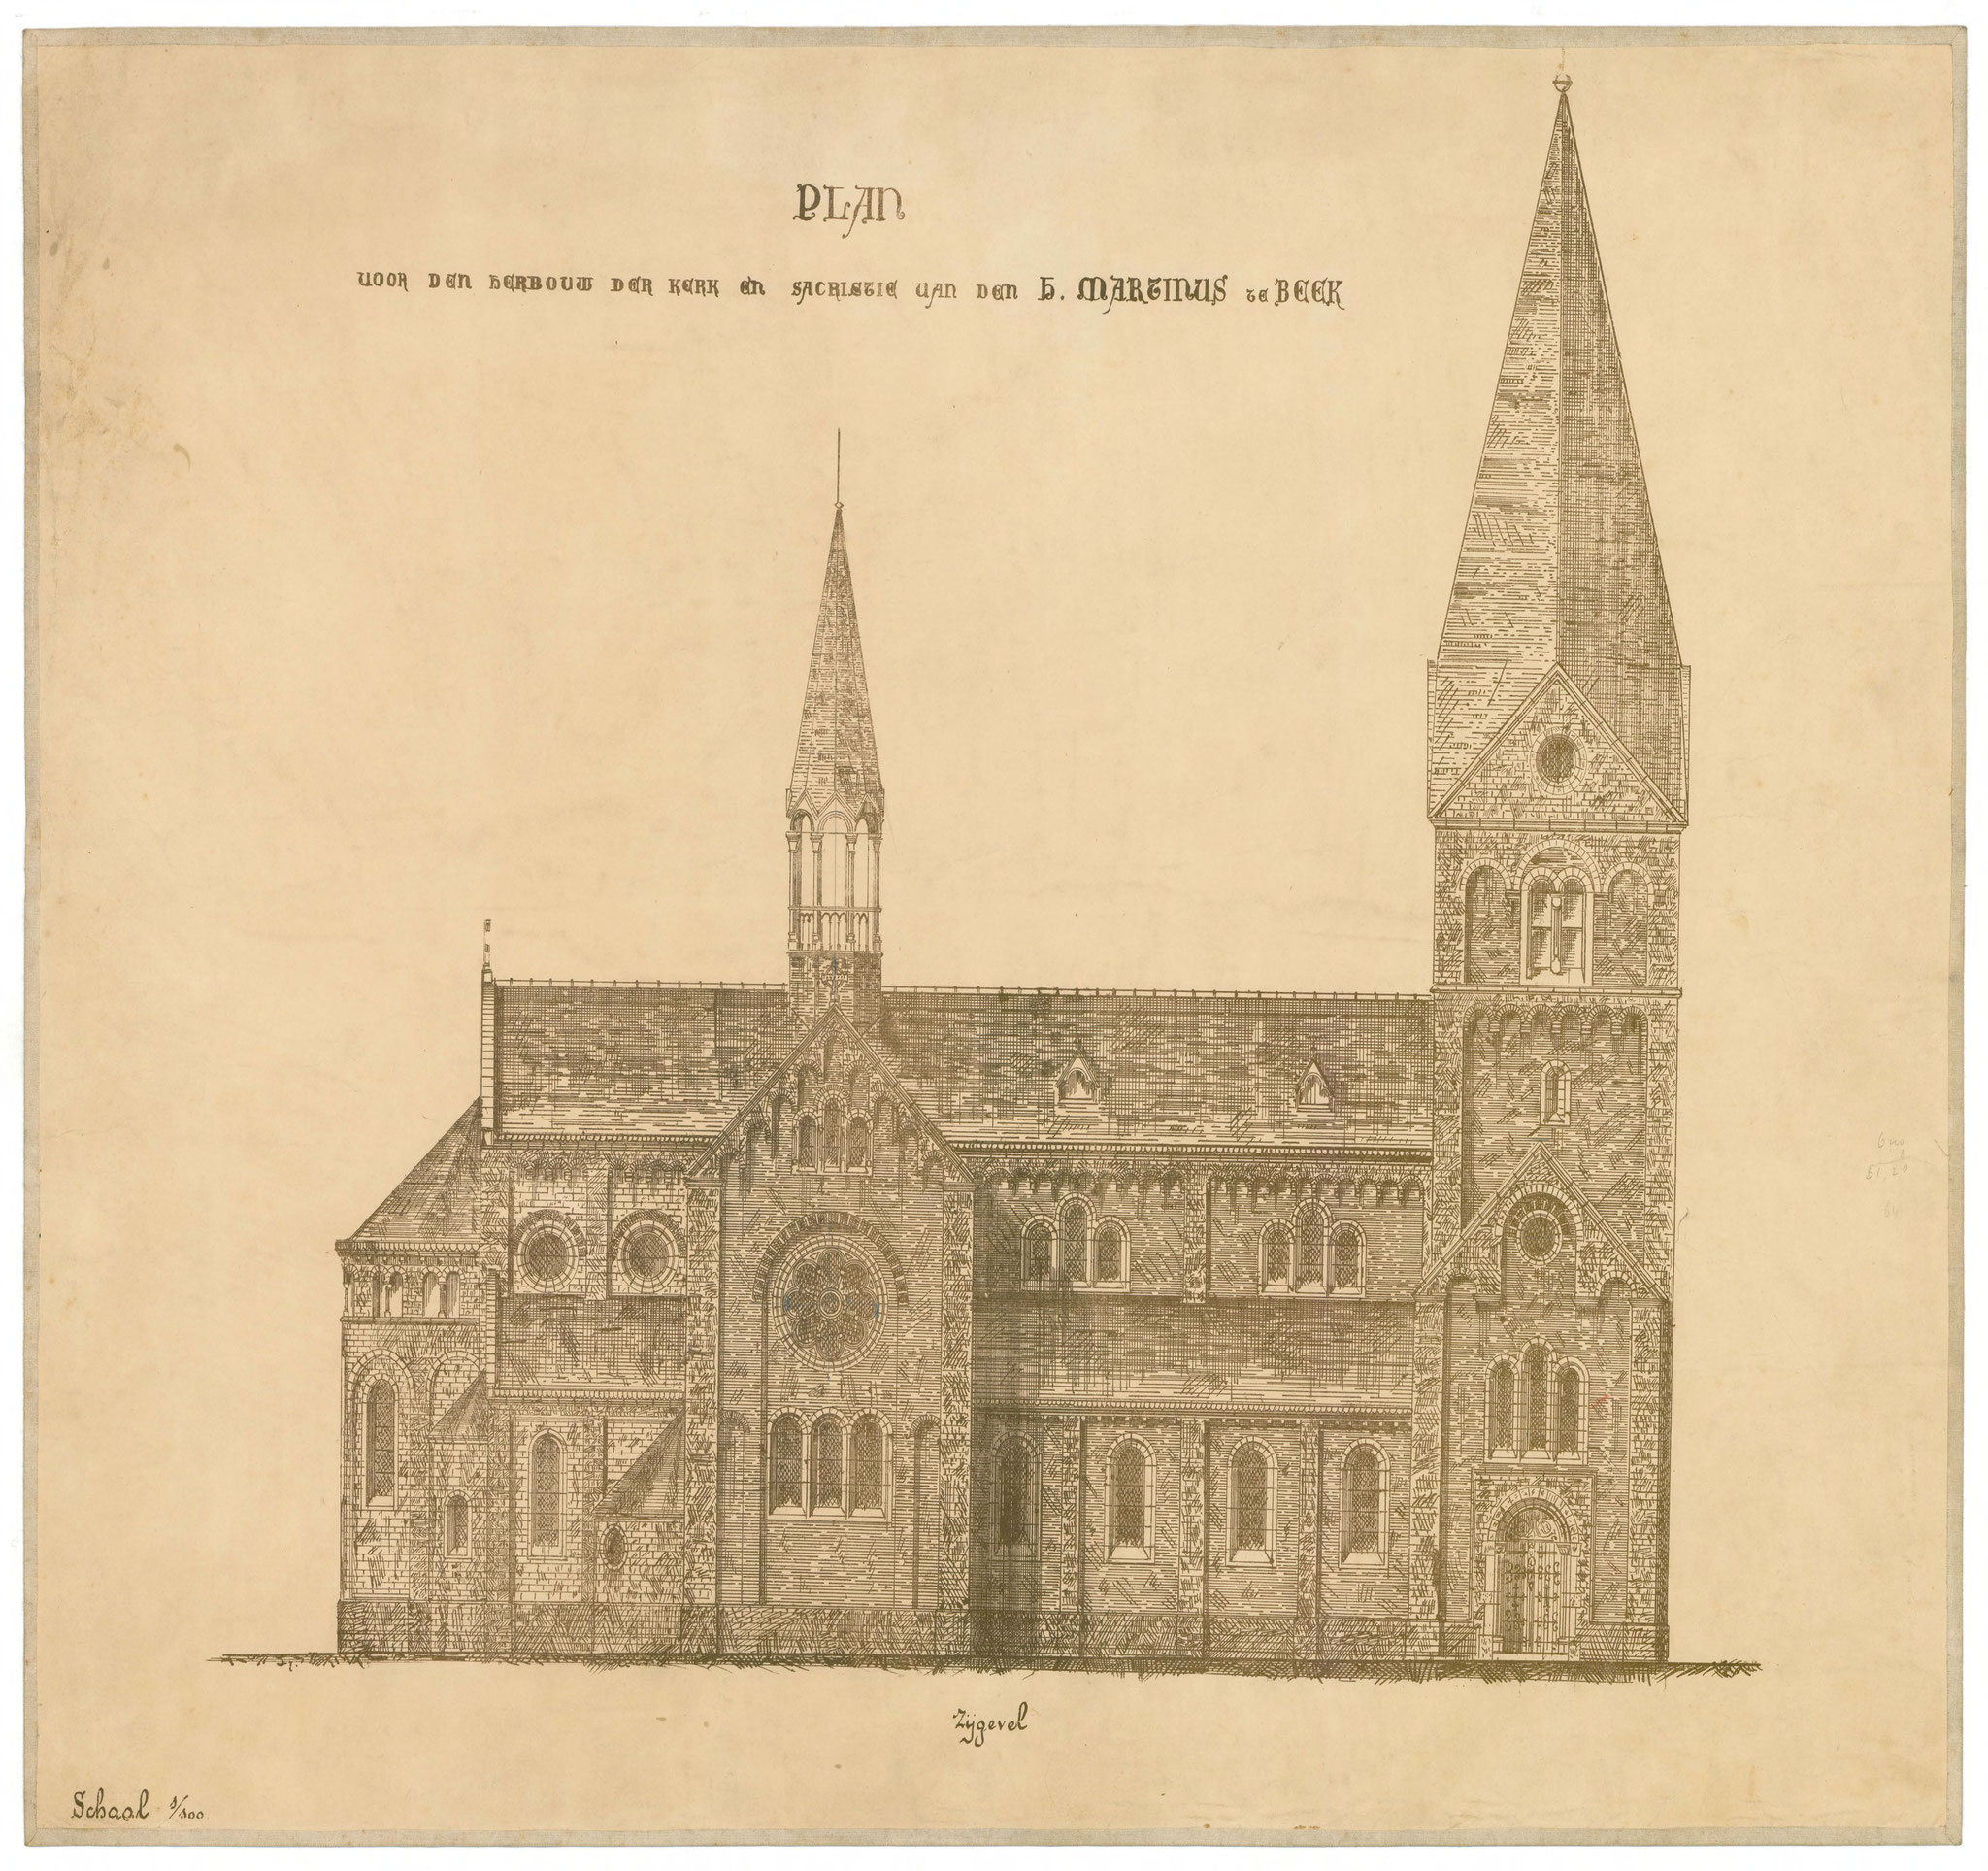 Ontwerp voor een nieuwe kerk door Von Fisenne uit 1888. De rombische toren is nooit gerealiseerd.  (bron: panddossier archief kerkbestuur).